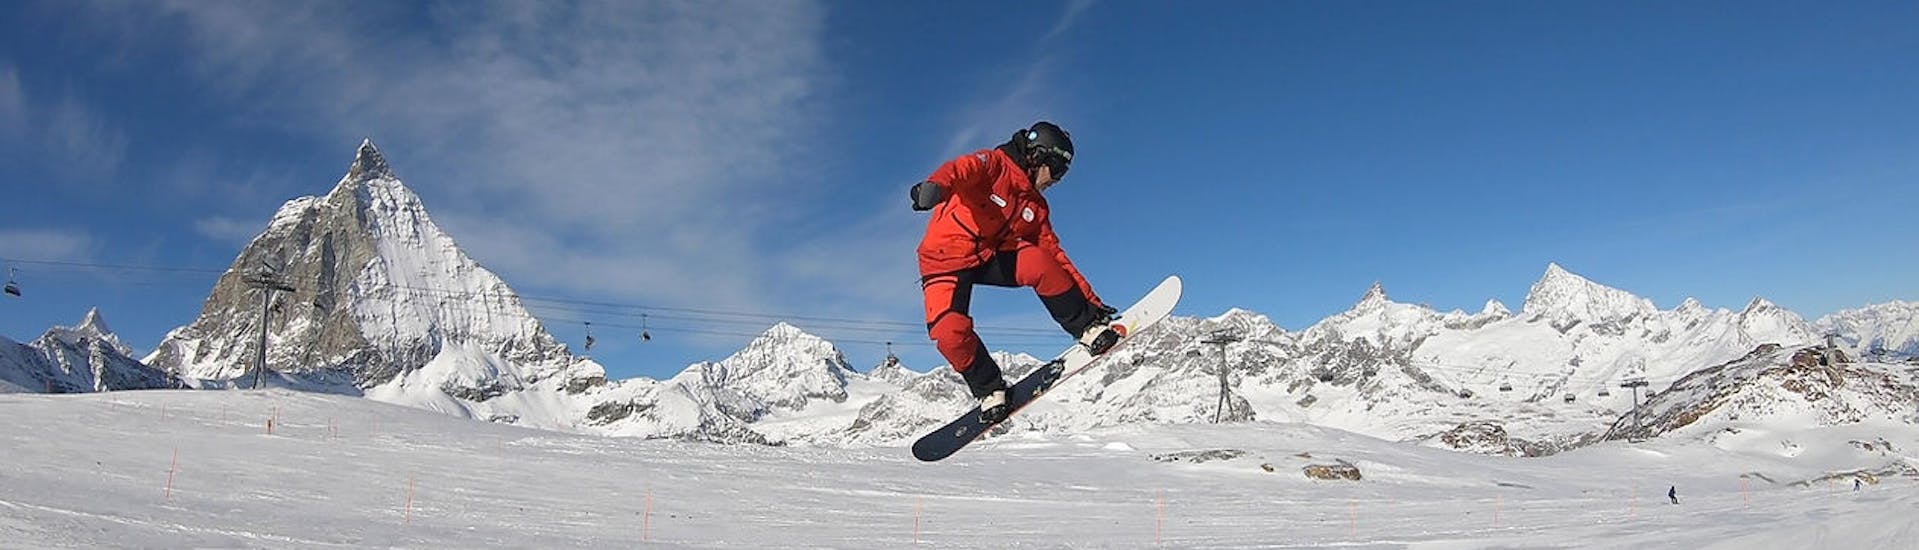 Ein Snowboardlehrer hüpft über eine Schanze vor dem Bergpanorama von Zermatt beim Privater Snowboardkurs für Kinder und Erwachsene aller Levels mit der Evolution Skischule Zermatt.